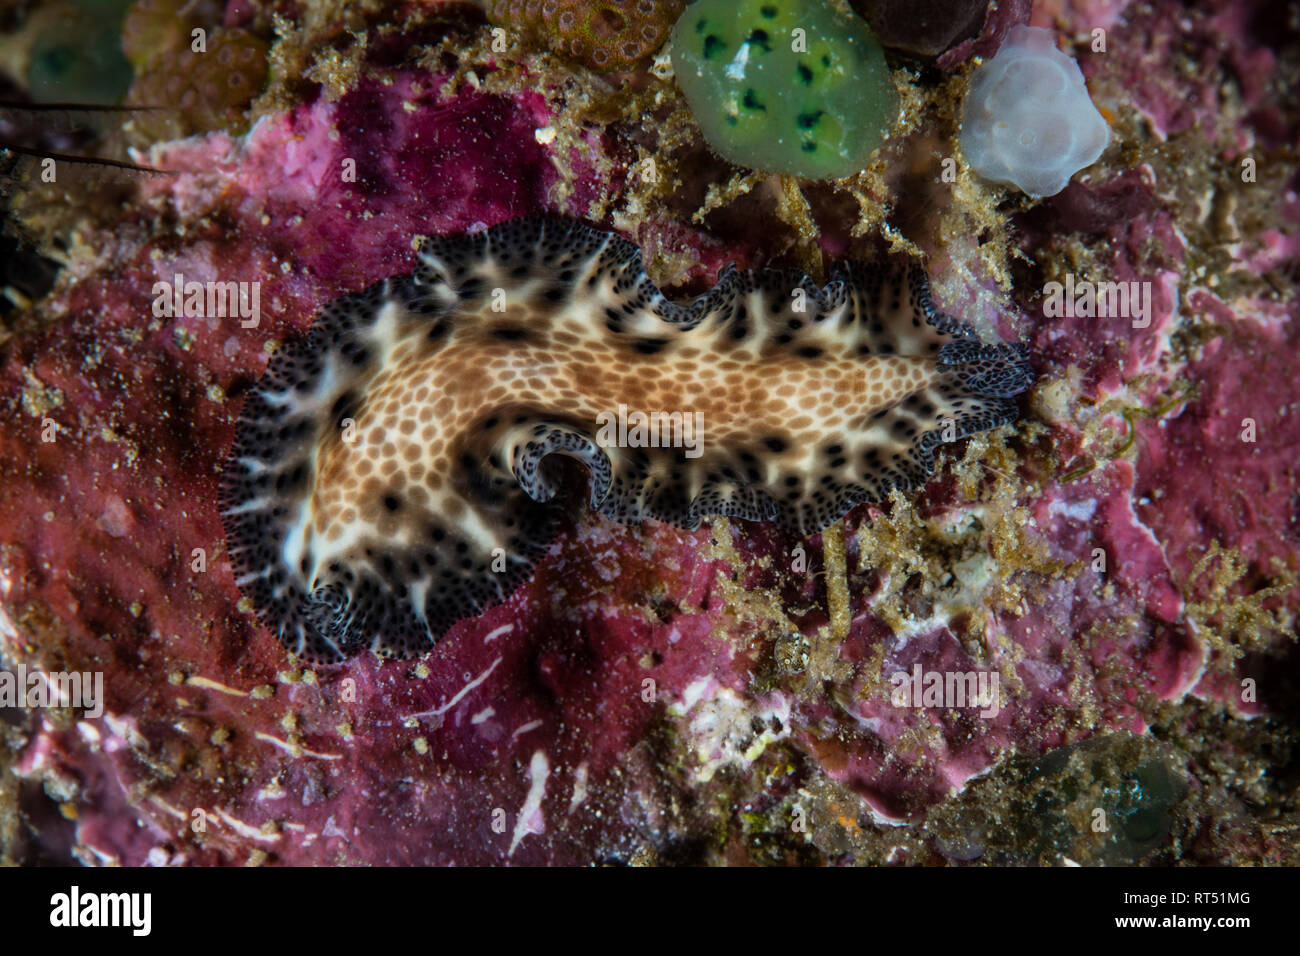 A Maritigrella fuscopunctata flatworm crawls on coralline algae. Stock Photo